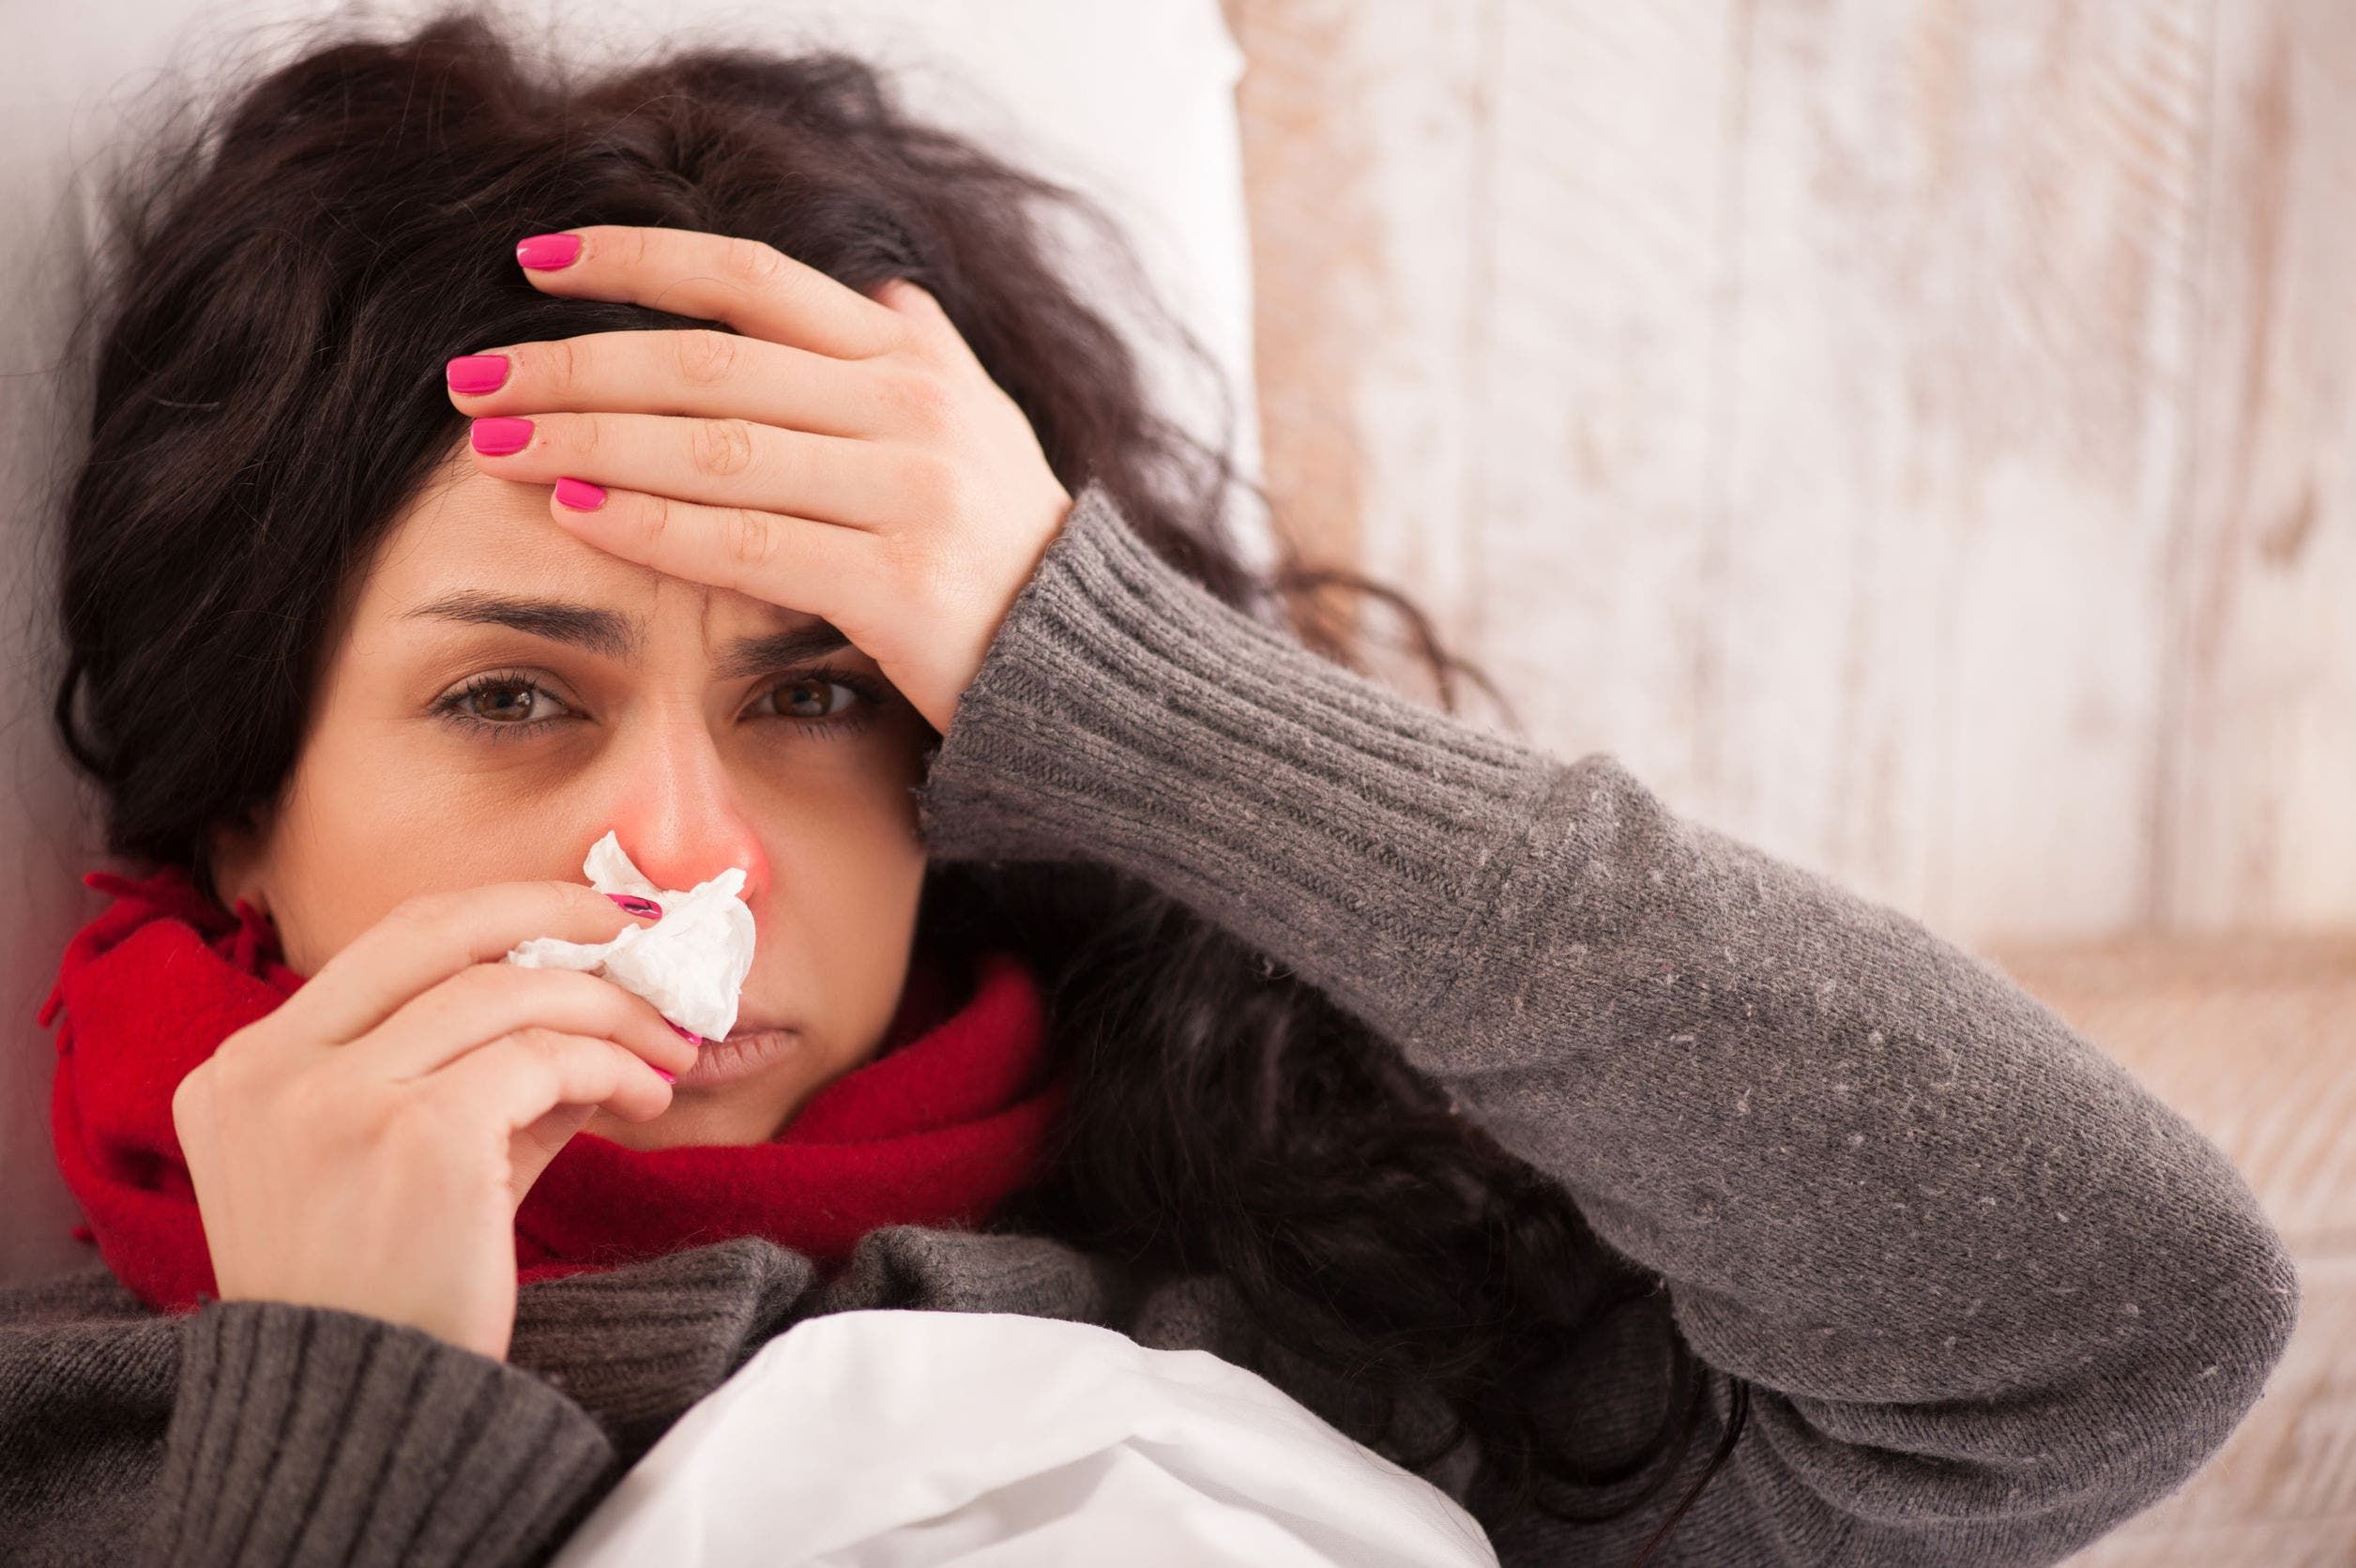 Grip ciddi bir hastalıktır